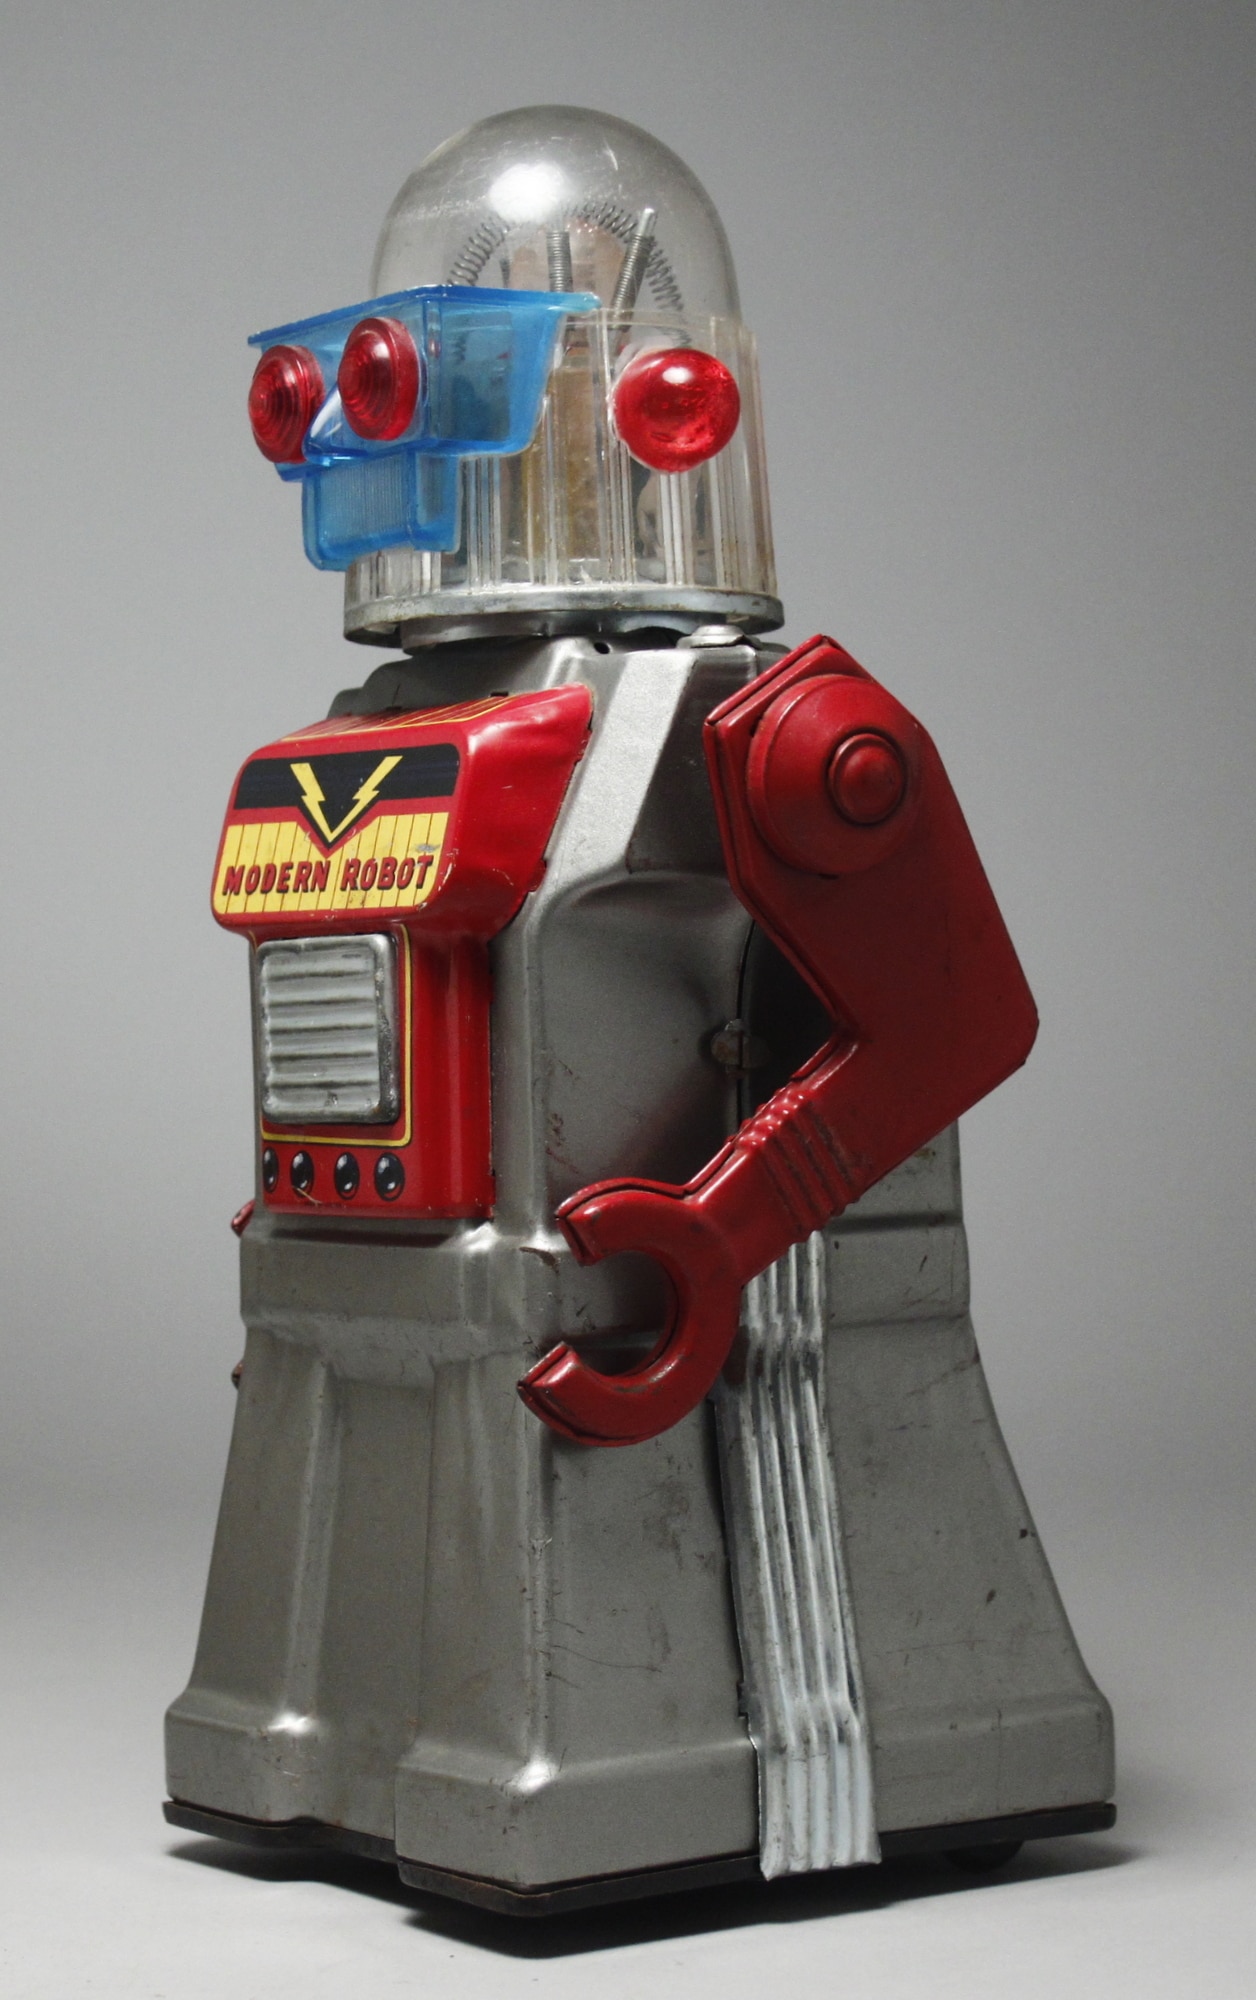 ブリキのロボット、米澤クラグスタン-